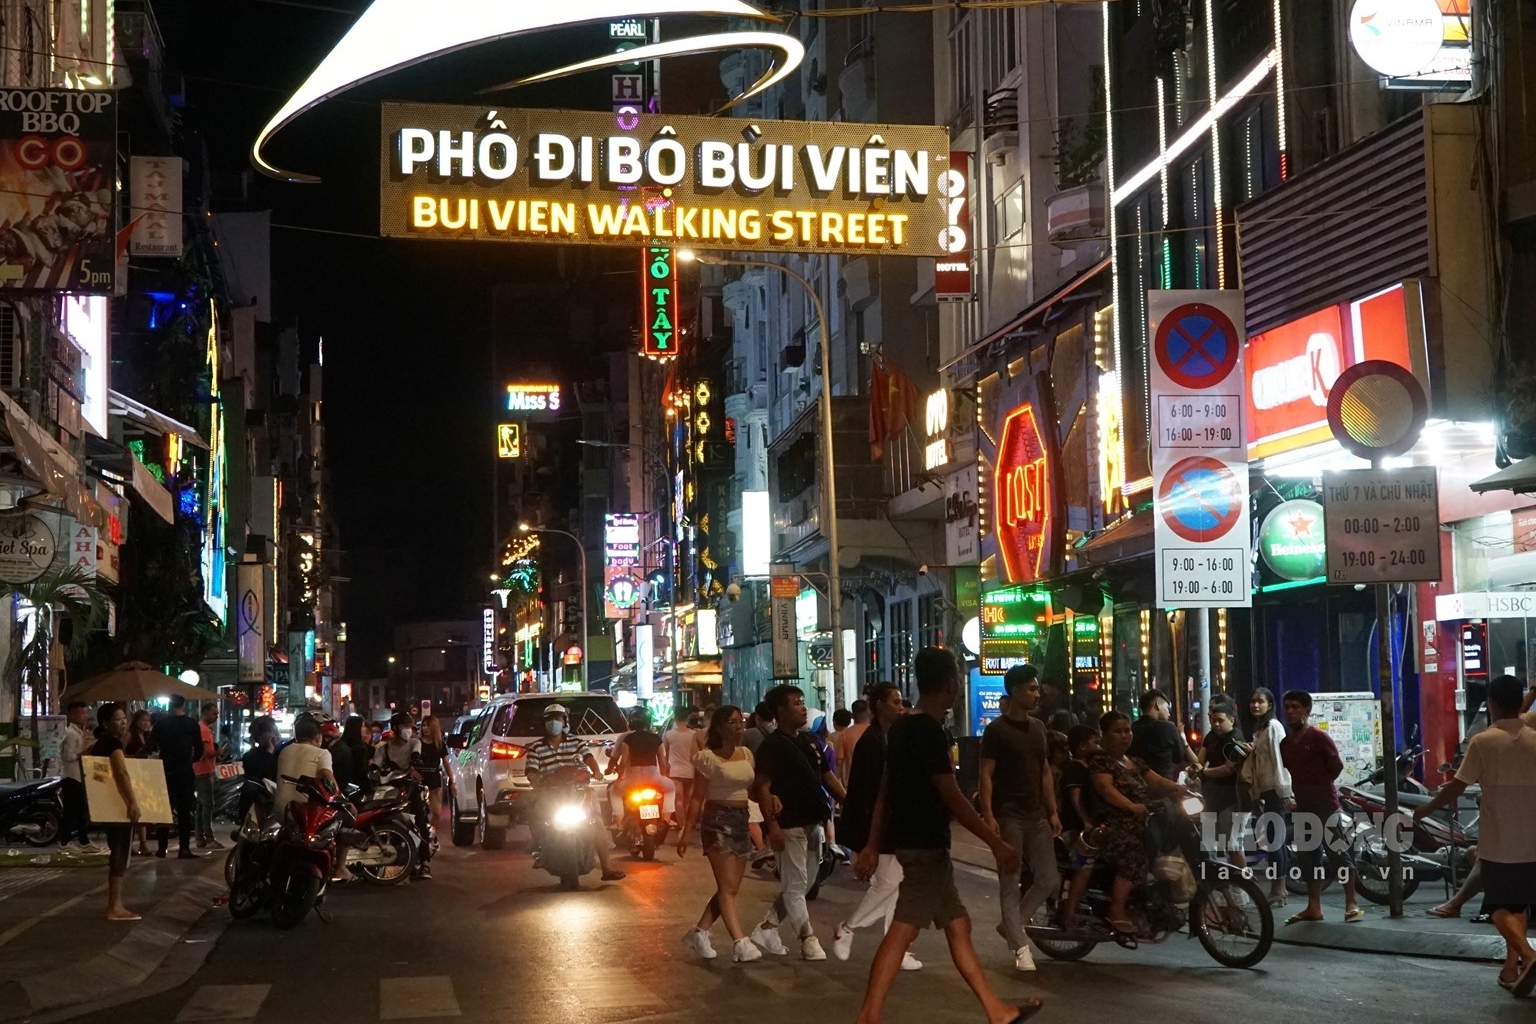 Bui Vien, Sai Gon's backpacker street bustling again [Photos]